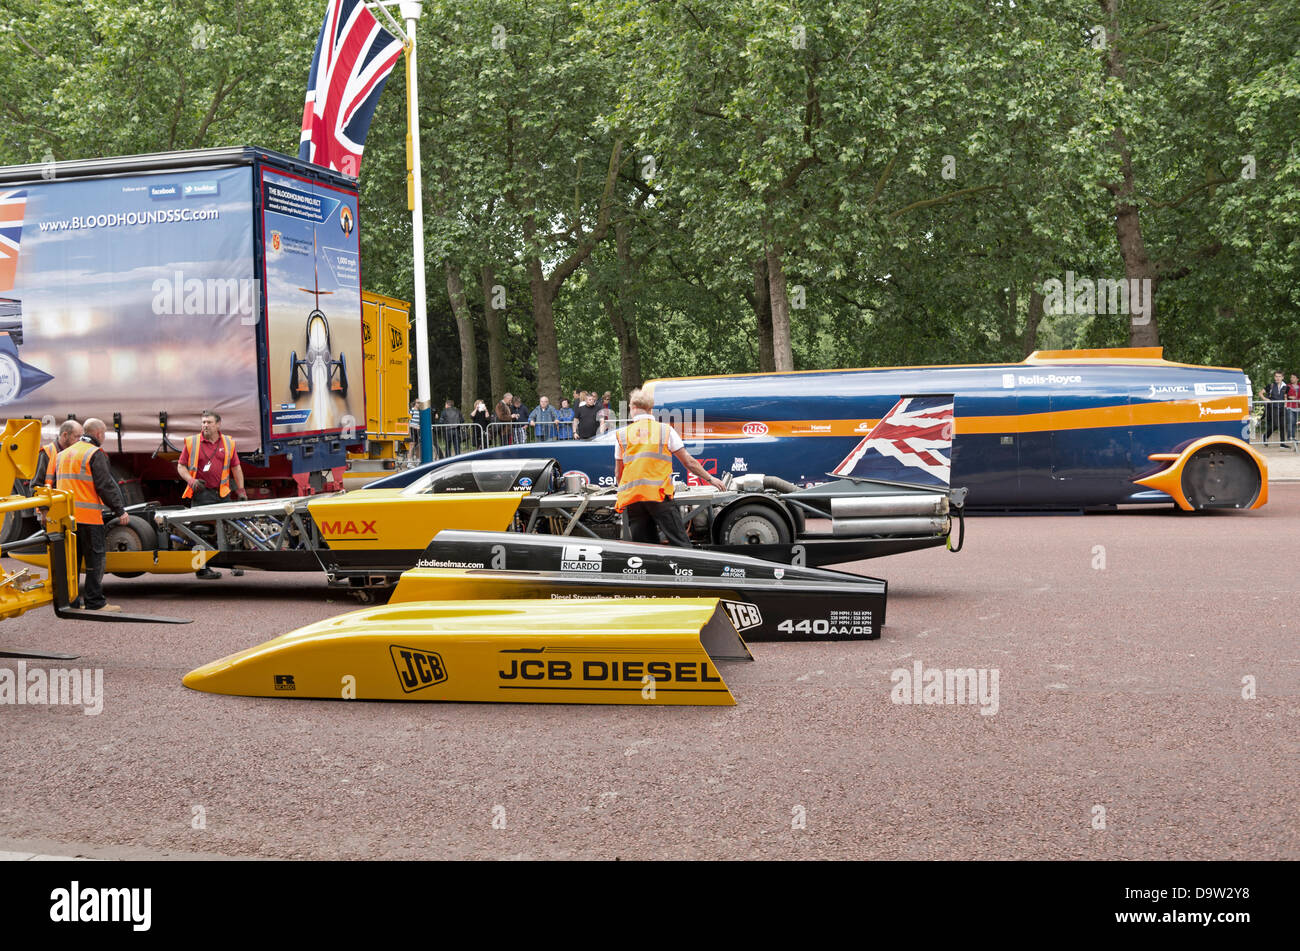 Le projet Bloodhound voiture supersonique et le JCB Dieselmax location d'être chargées à bord de camions sur le Mall à Londres. Banque D'Images